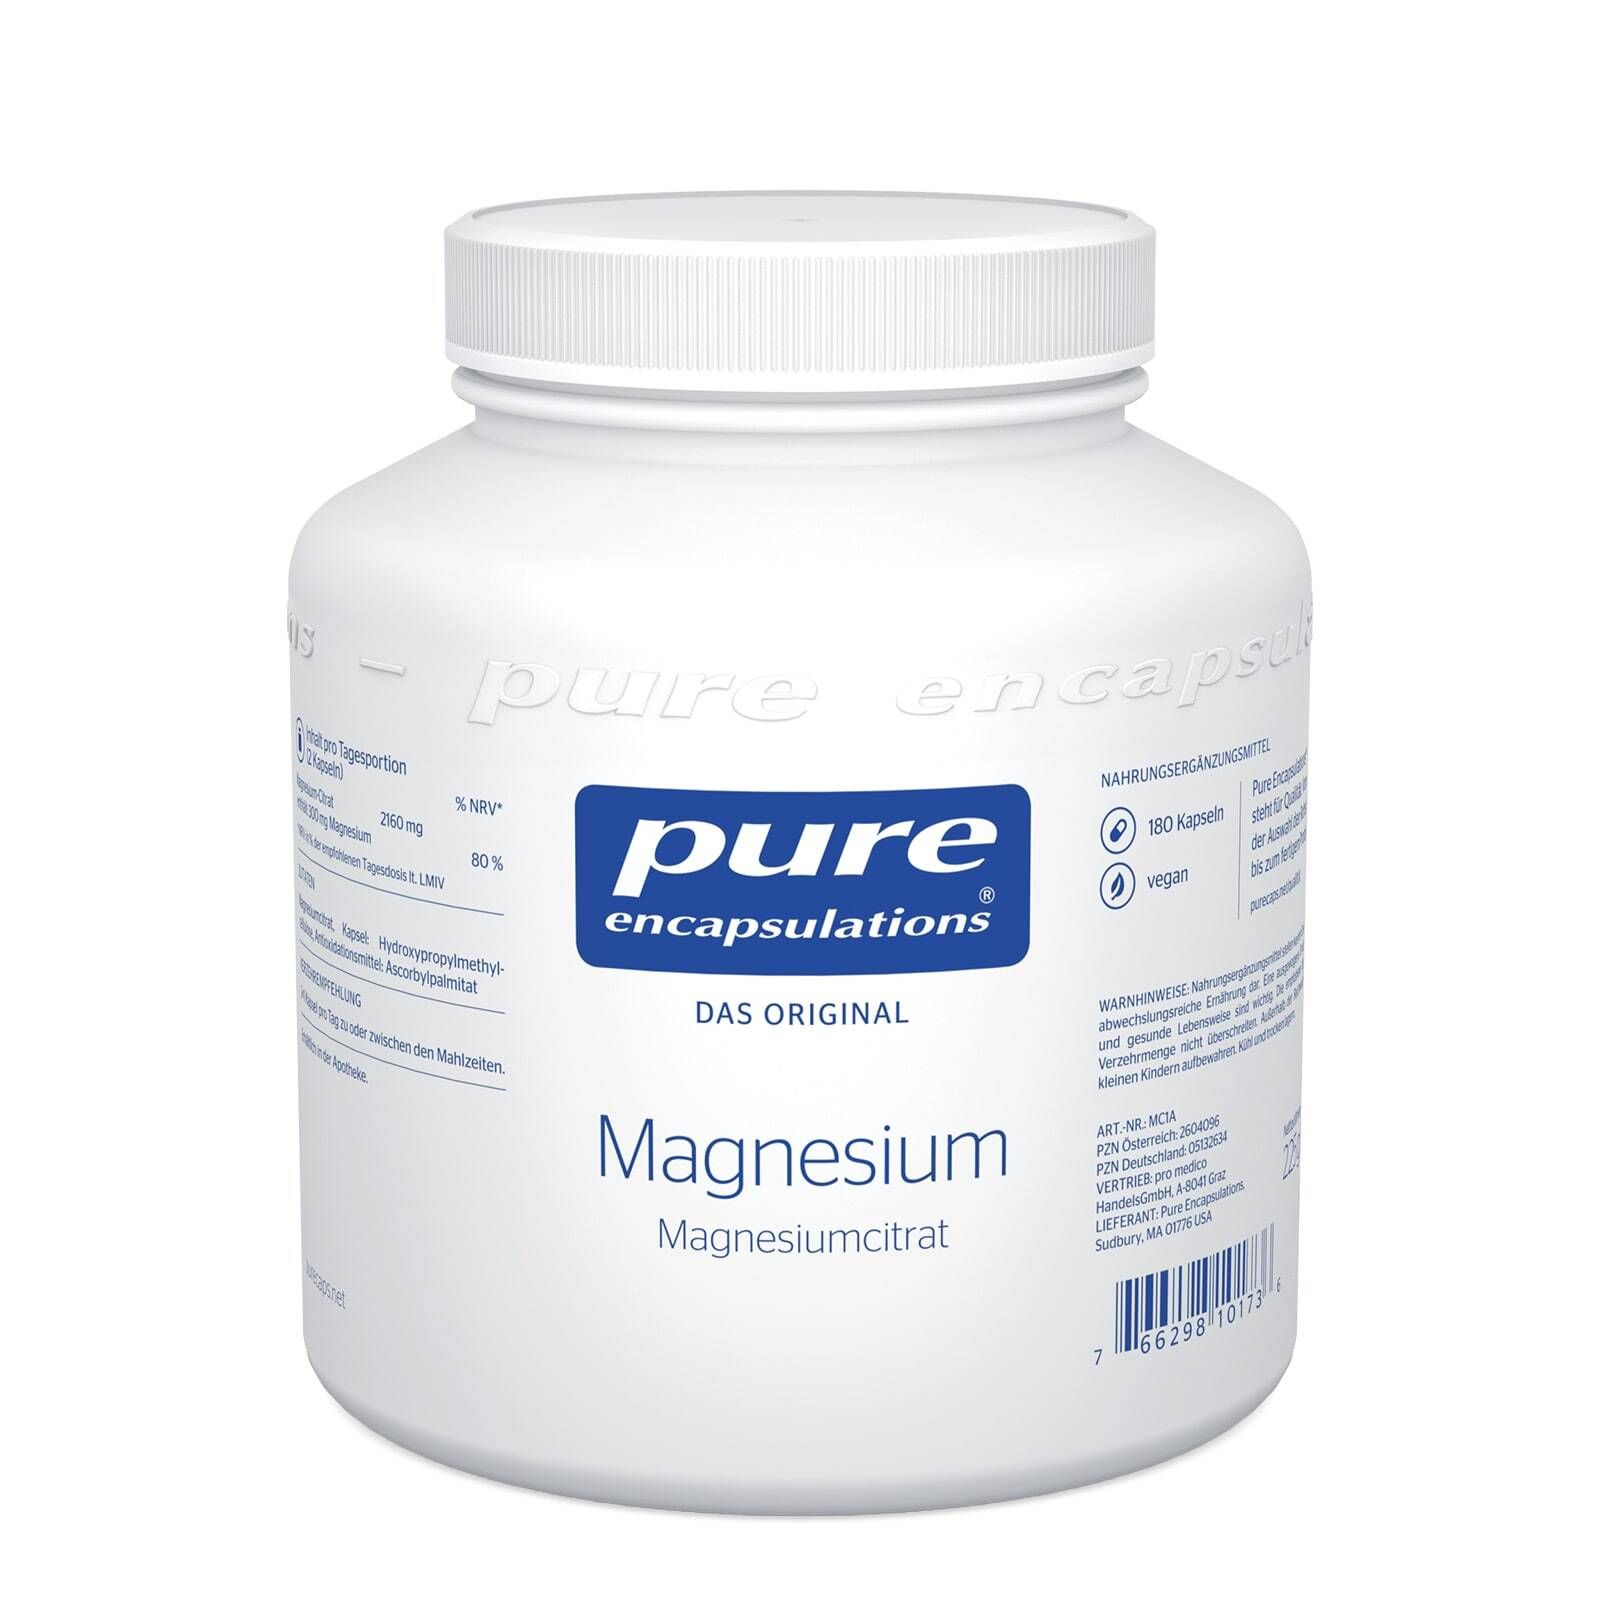 Pure Encapsulations® Magnesium (Magnesiumcitrat)